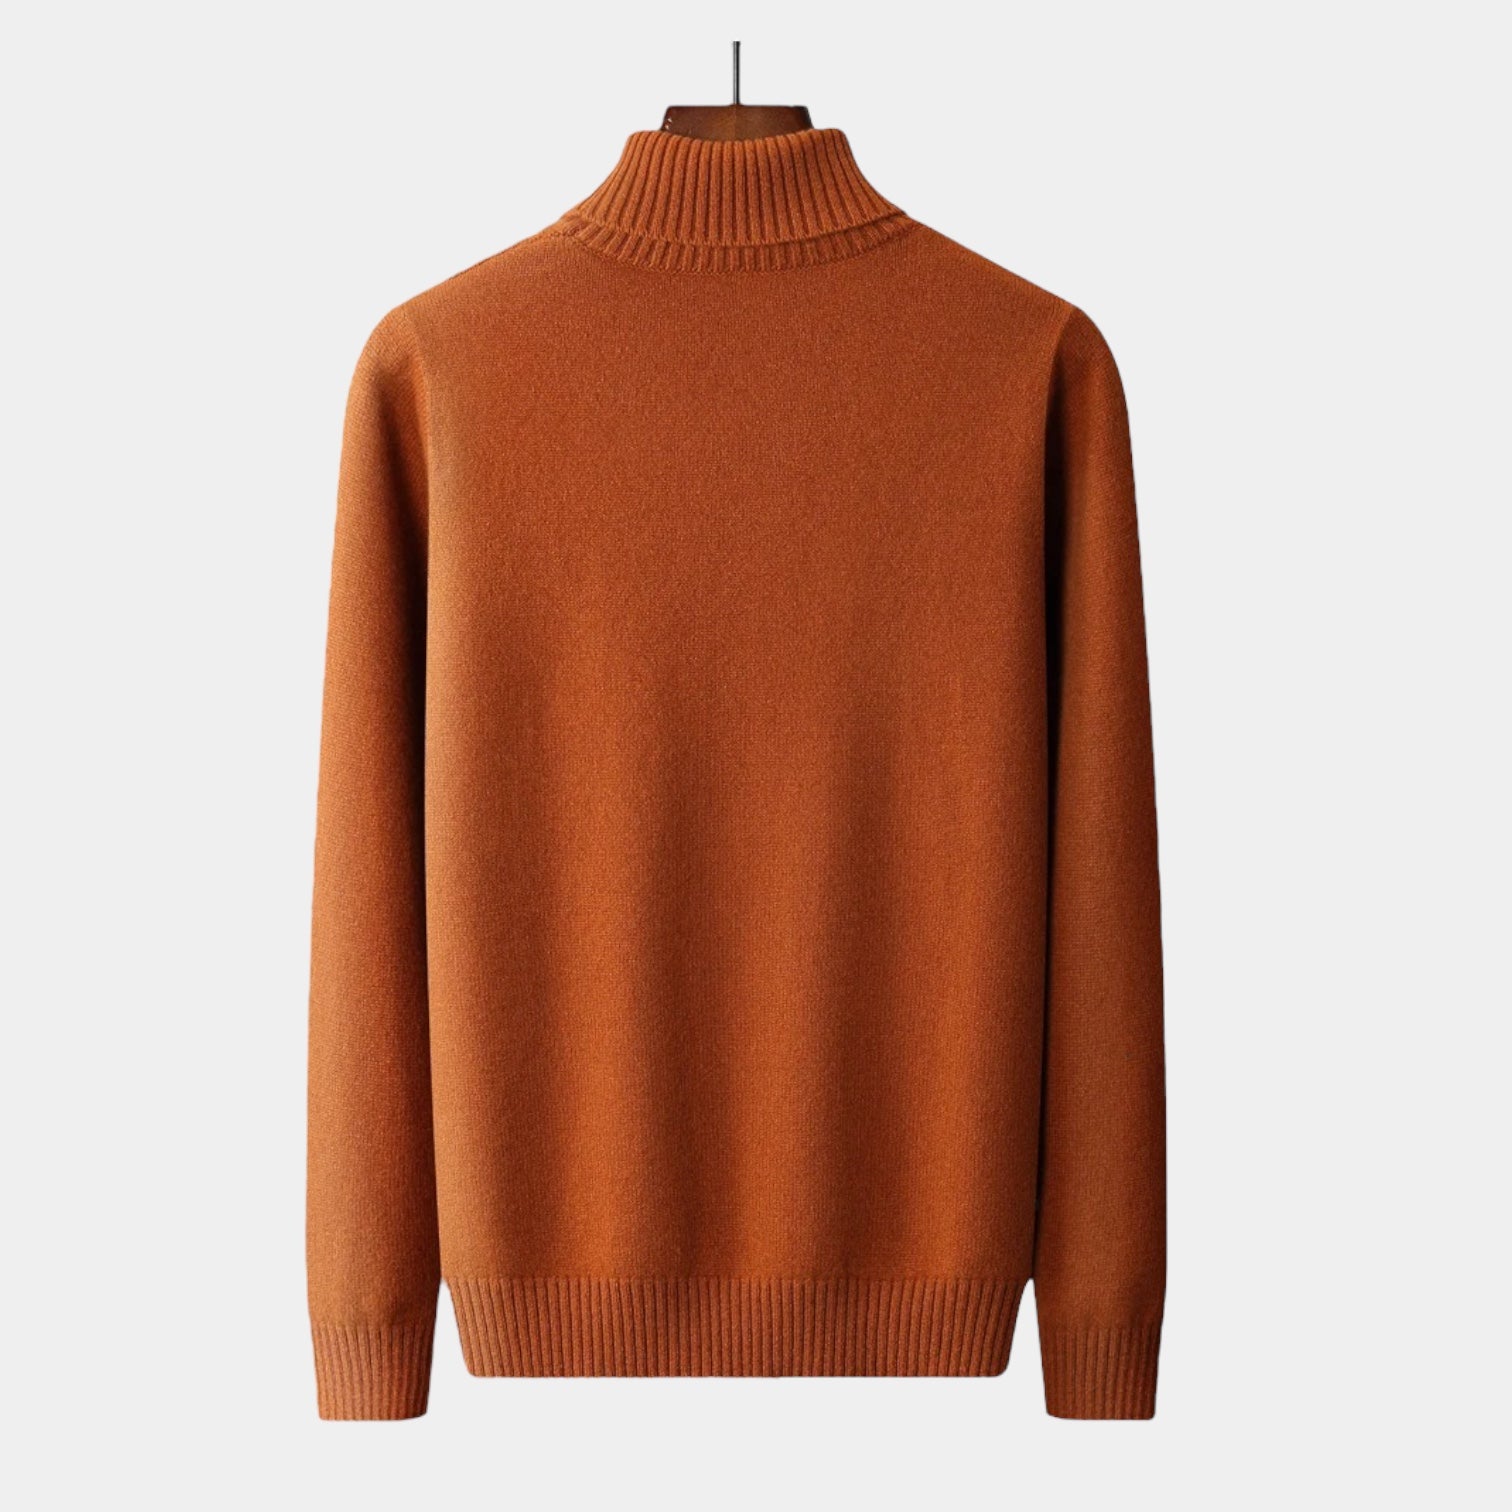 OLD MONEY Merino Wool Knitted Turtleneck Sweater - WEAR OLD MONEY